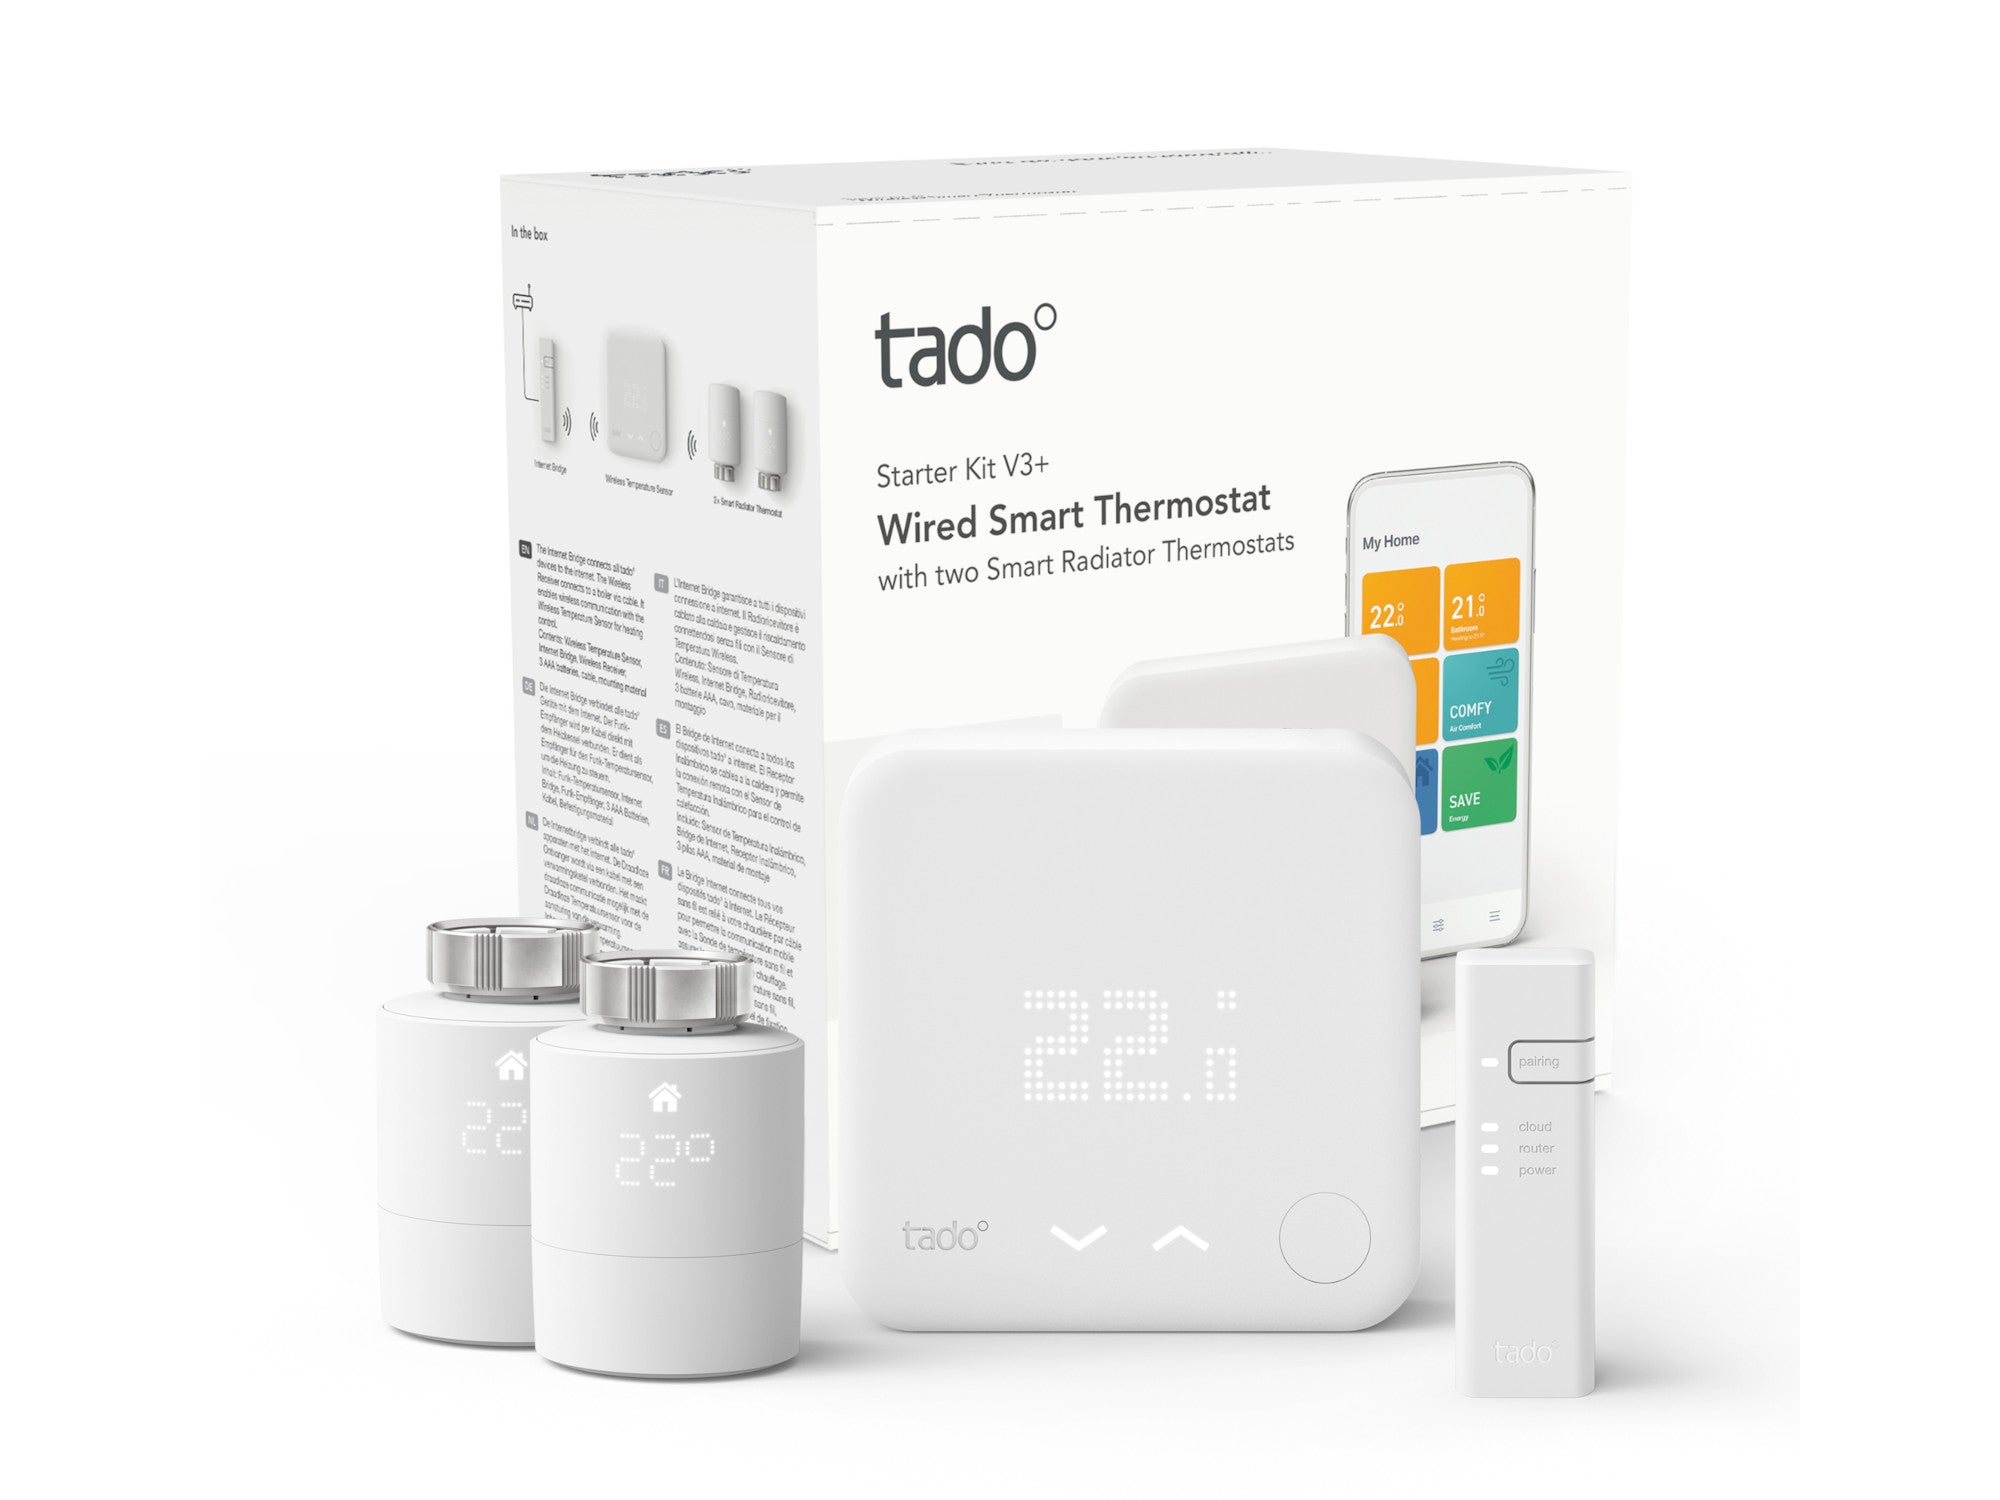 #Tado bestraft eigene Smart-Home-Kunden: Kein Upgrade möglich